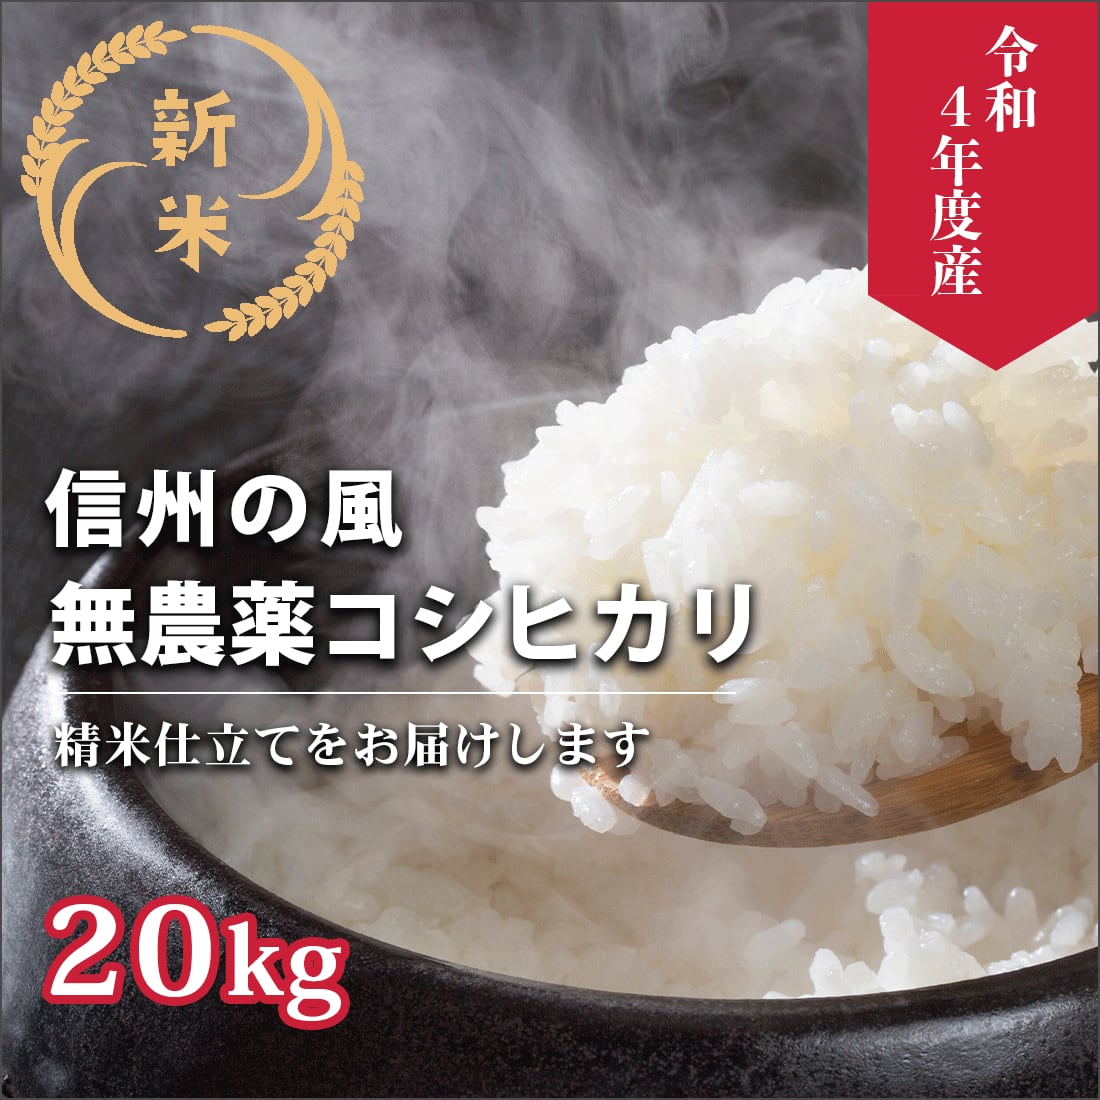 近江米 オリーブ酵素米 コシヒカリ 殺菌殺虫剤散布無し 無洗米 白米